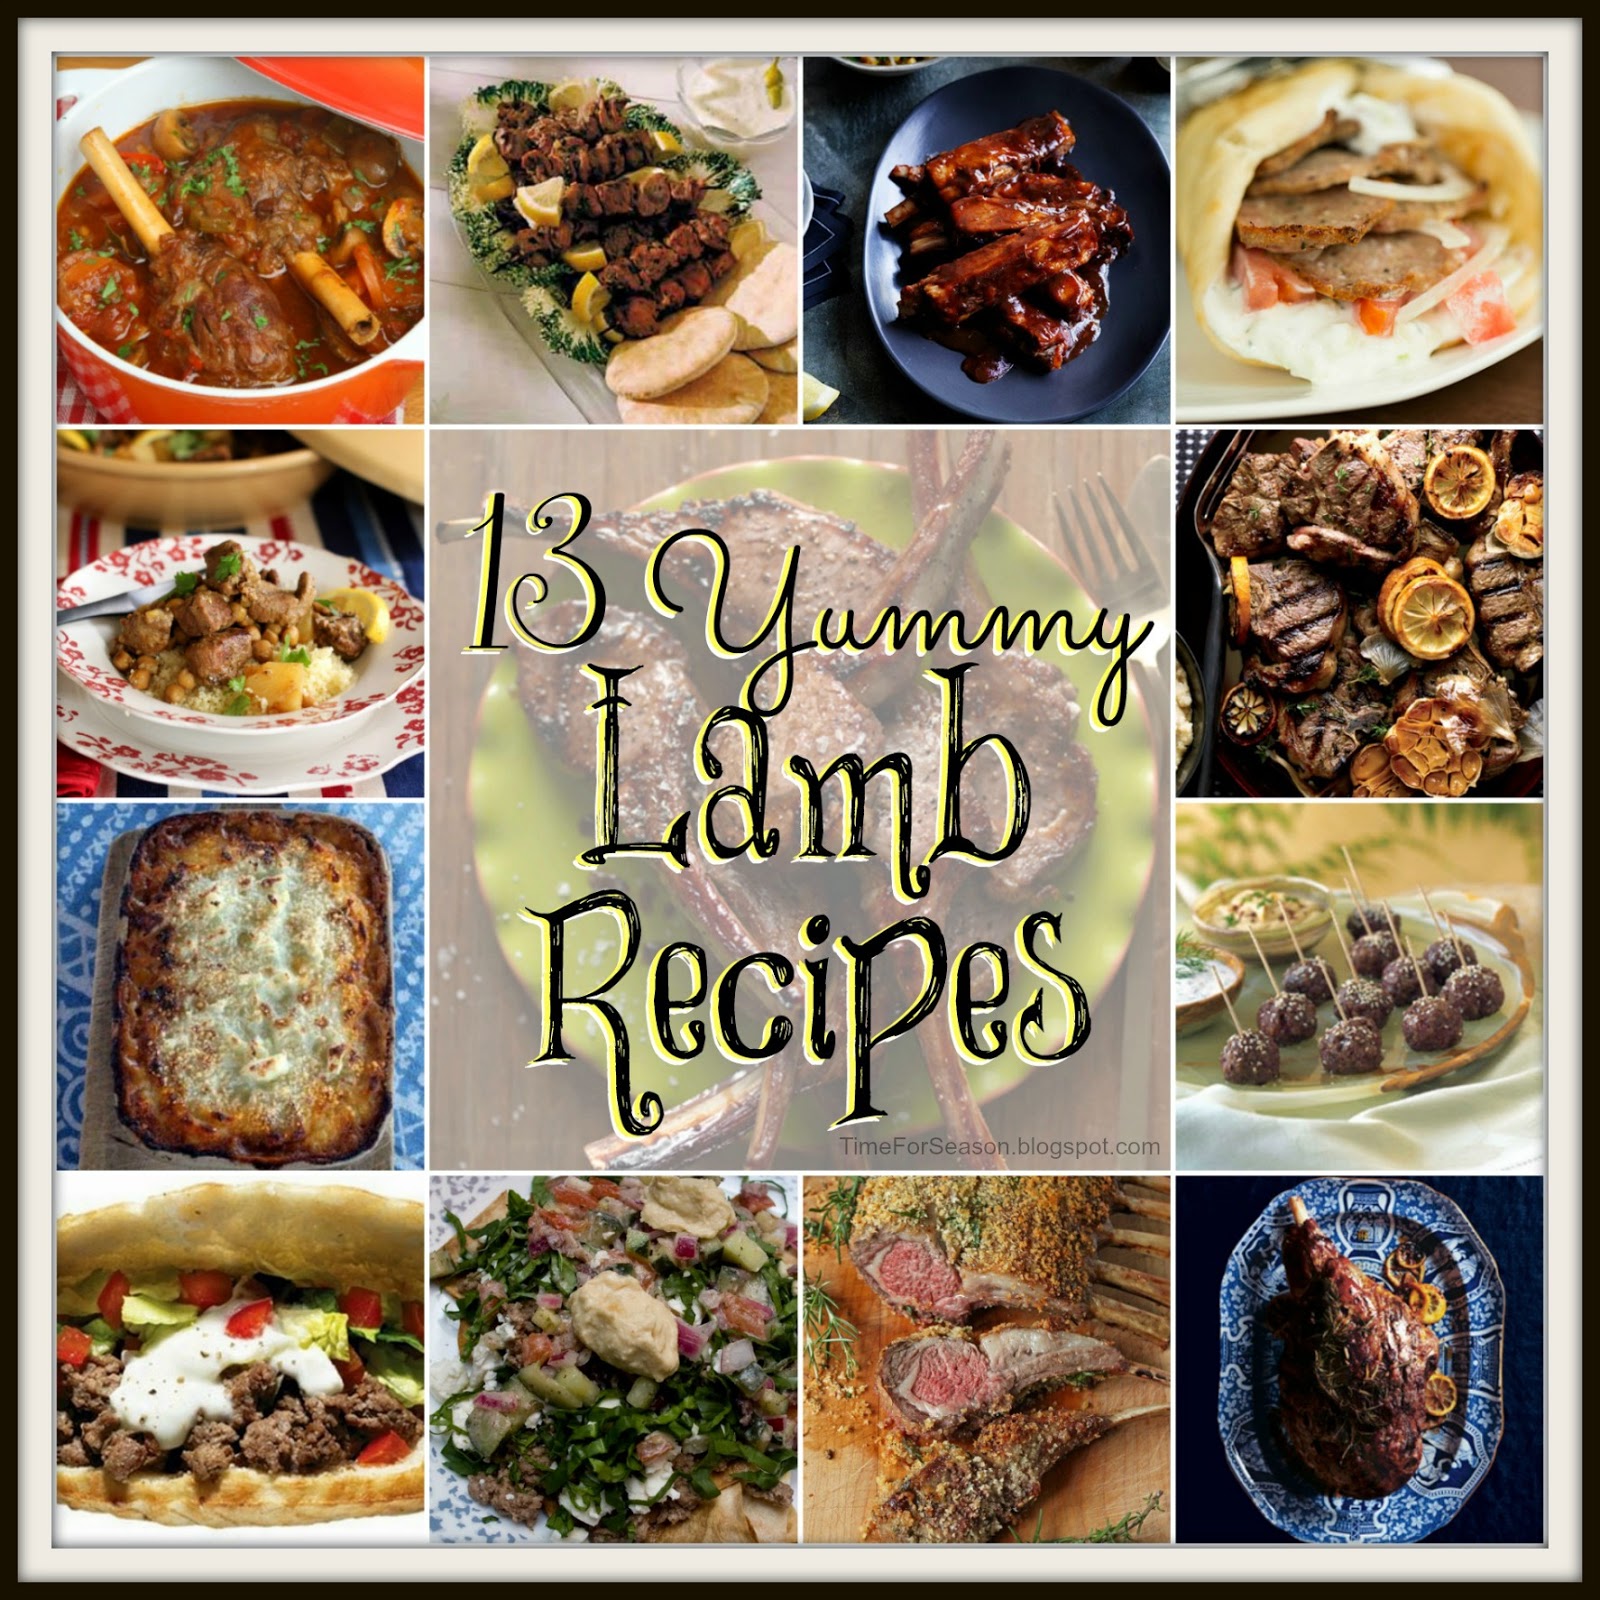 http://timeforseason.blogspot.com/2014/04/easter-lamb-recipes-for-spring.html